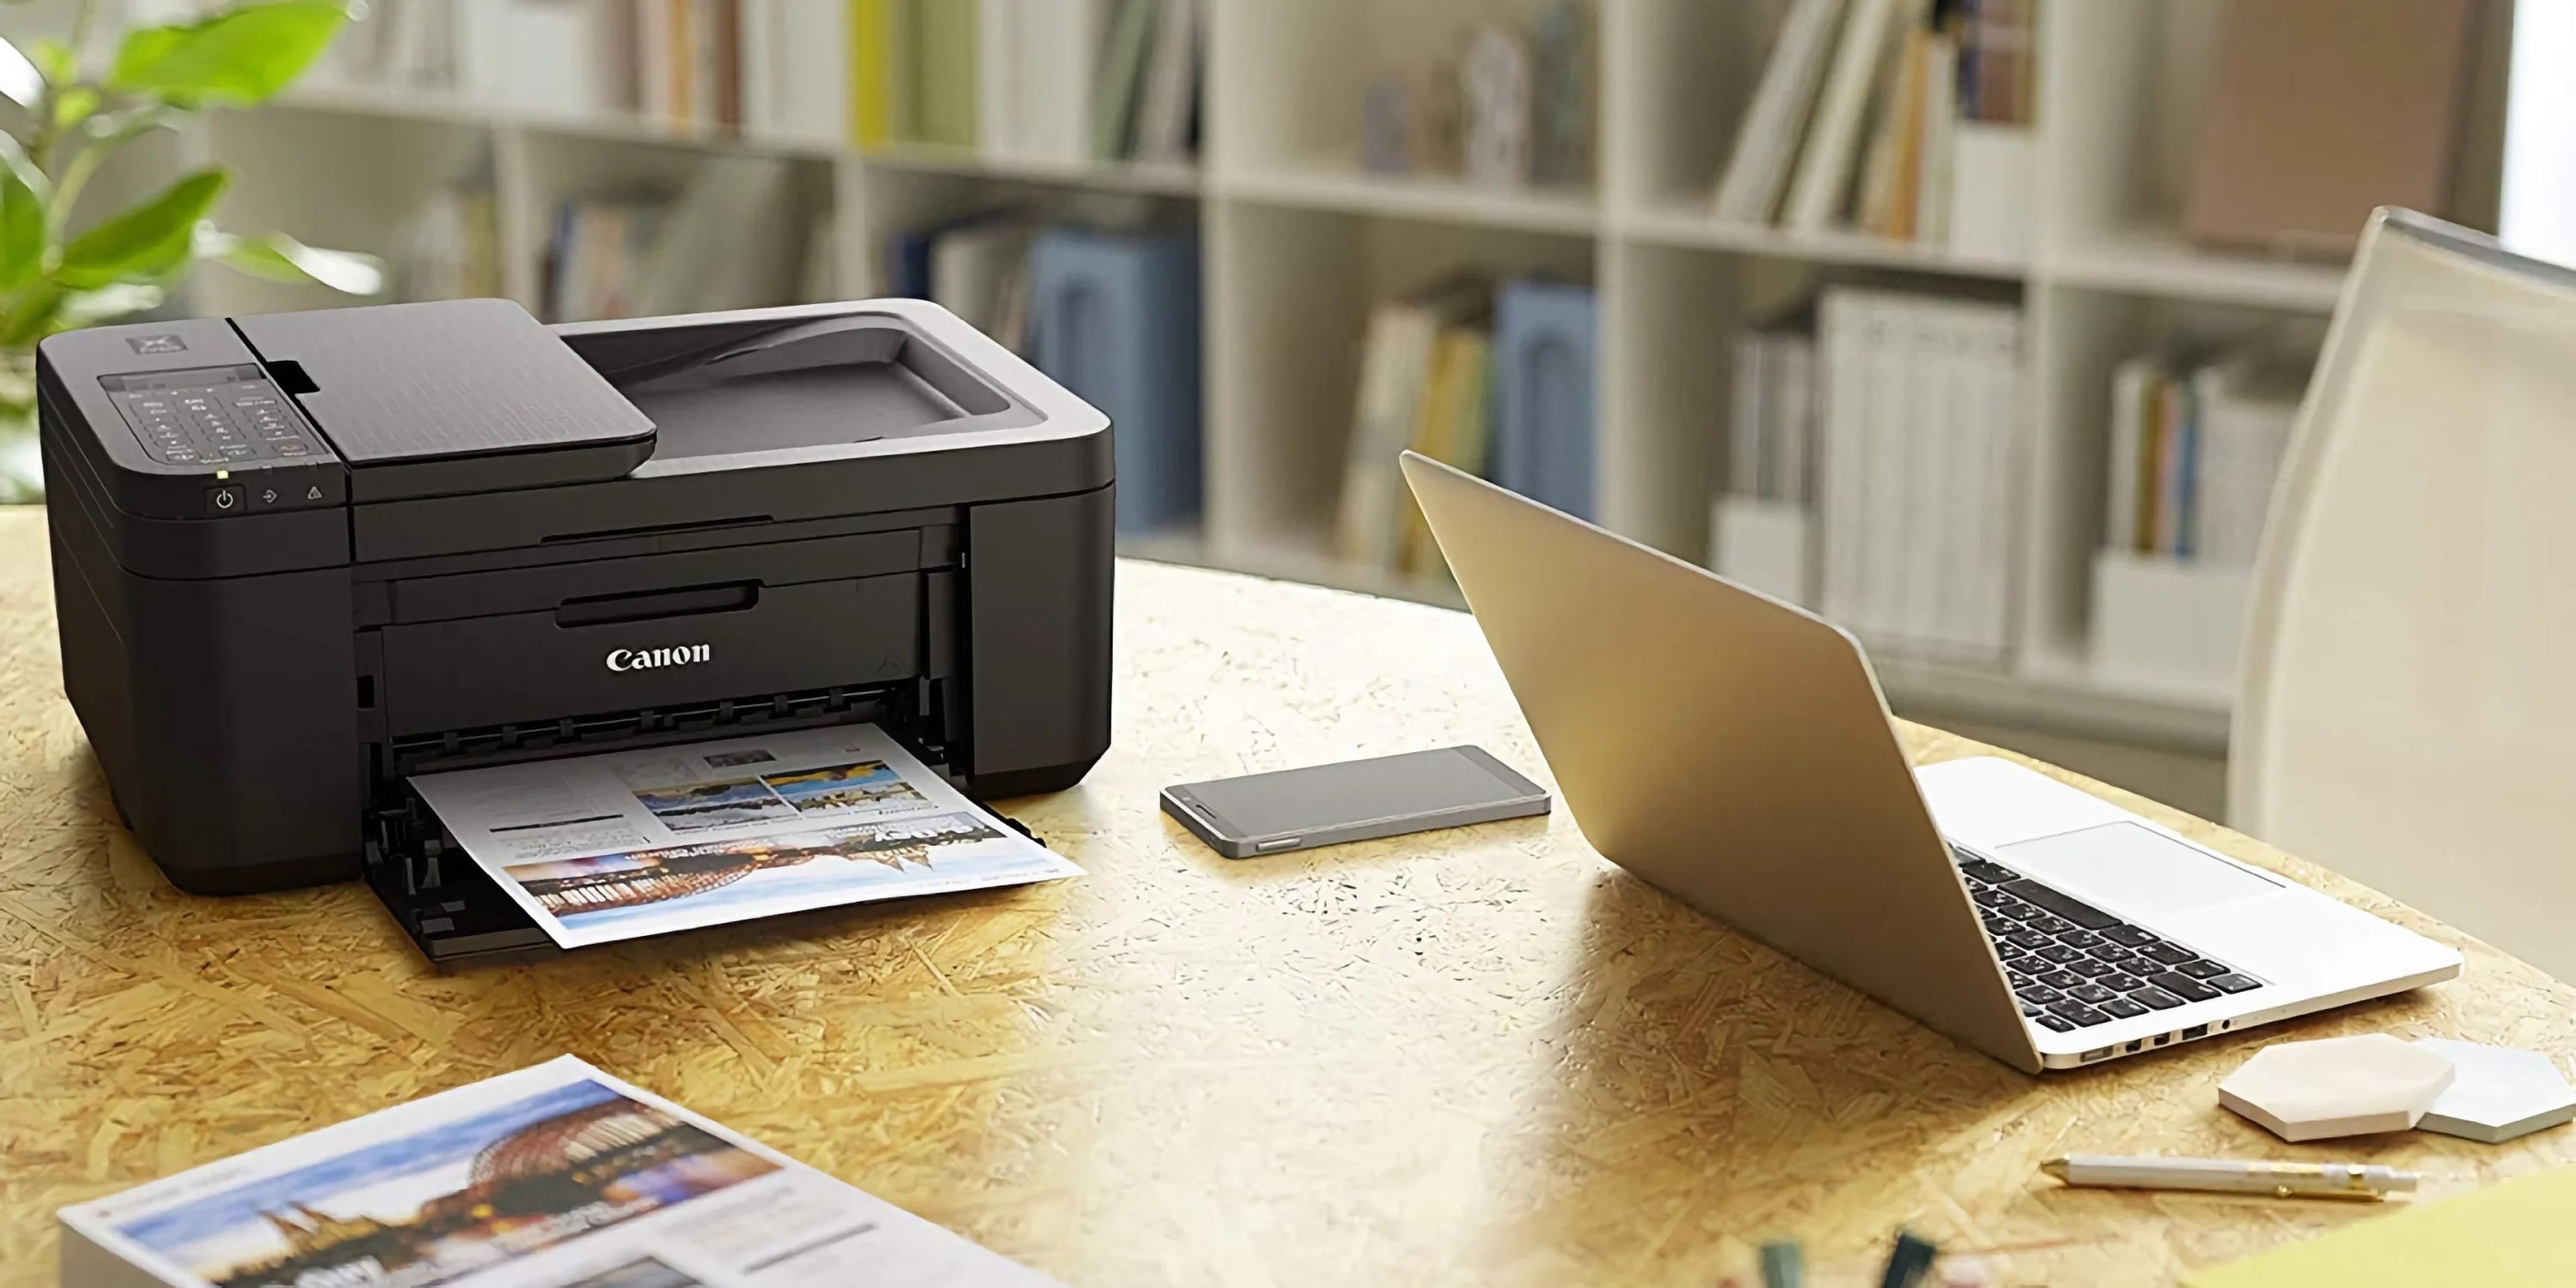 Estas las 6 mejores impresoras baratas que puedes en 2022 | Computer Hoy